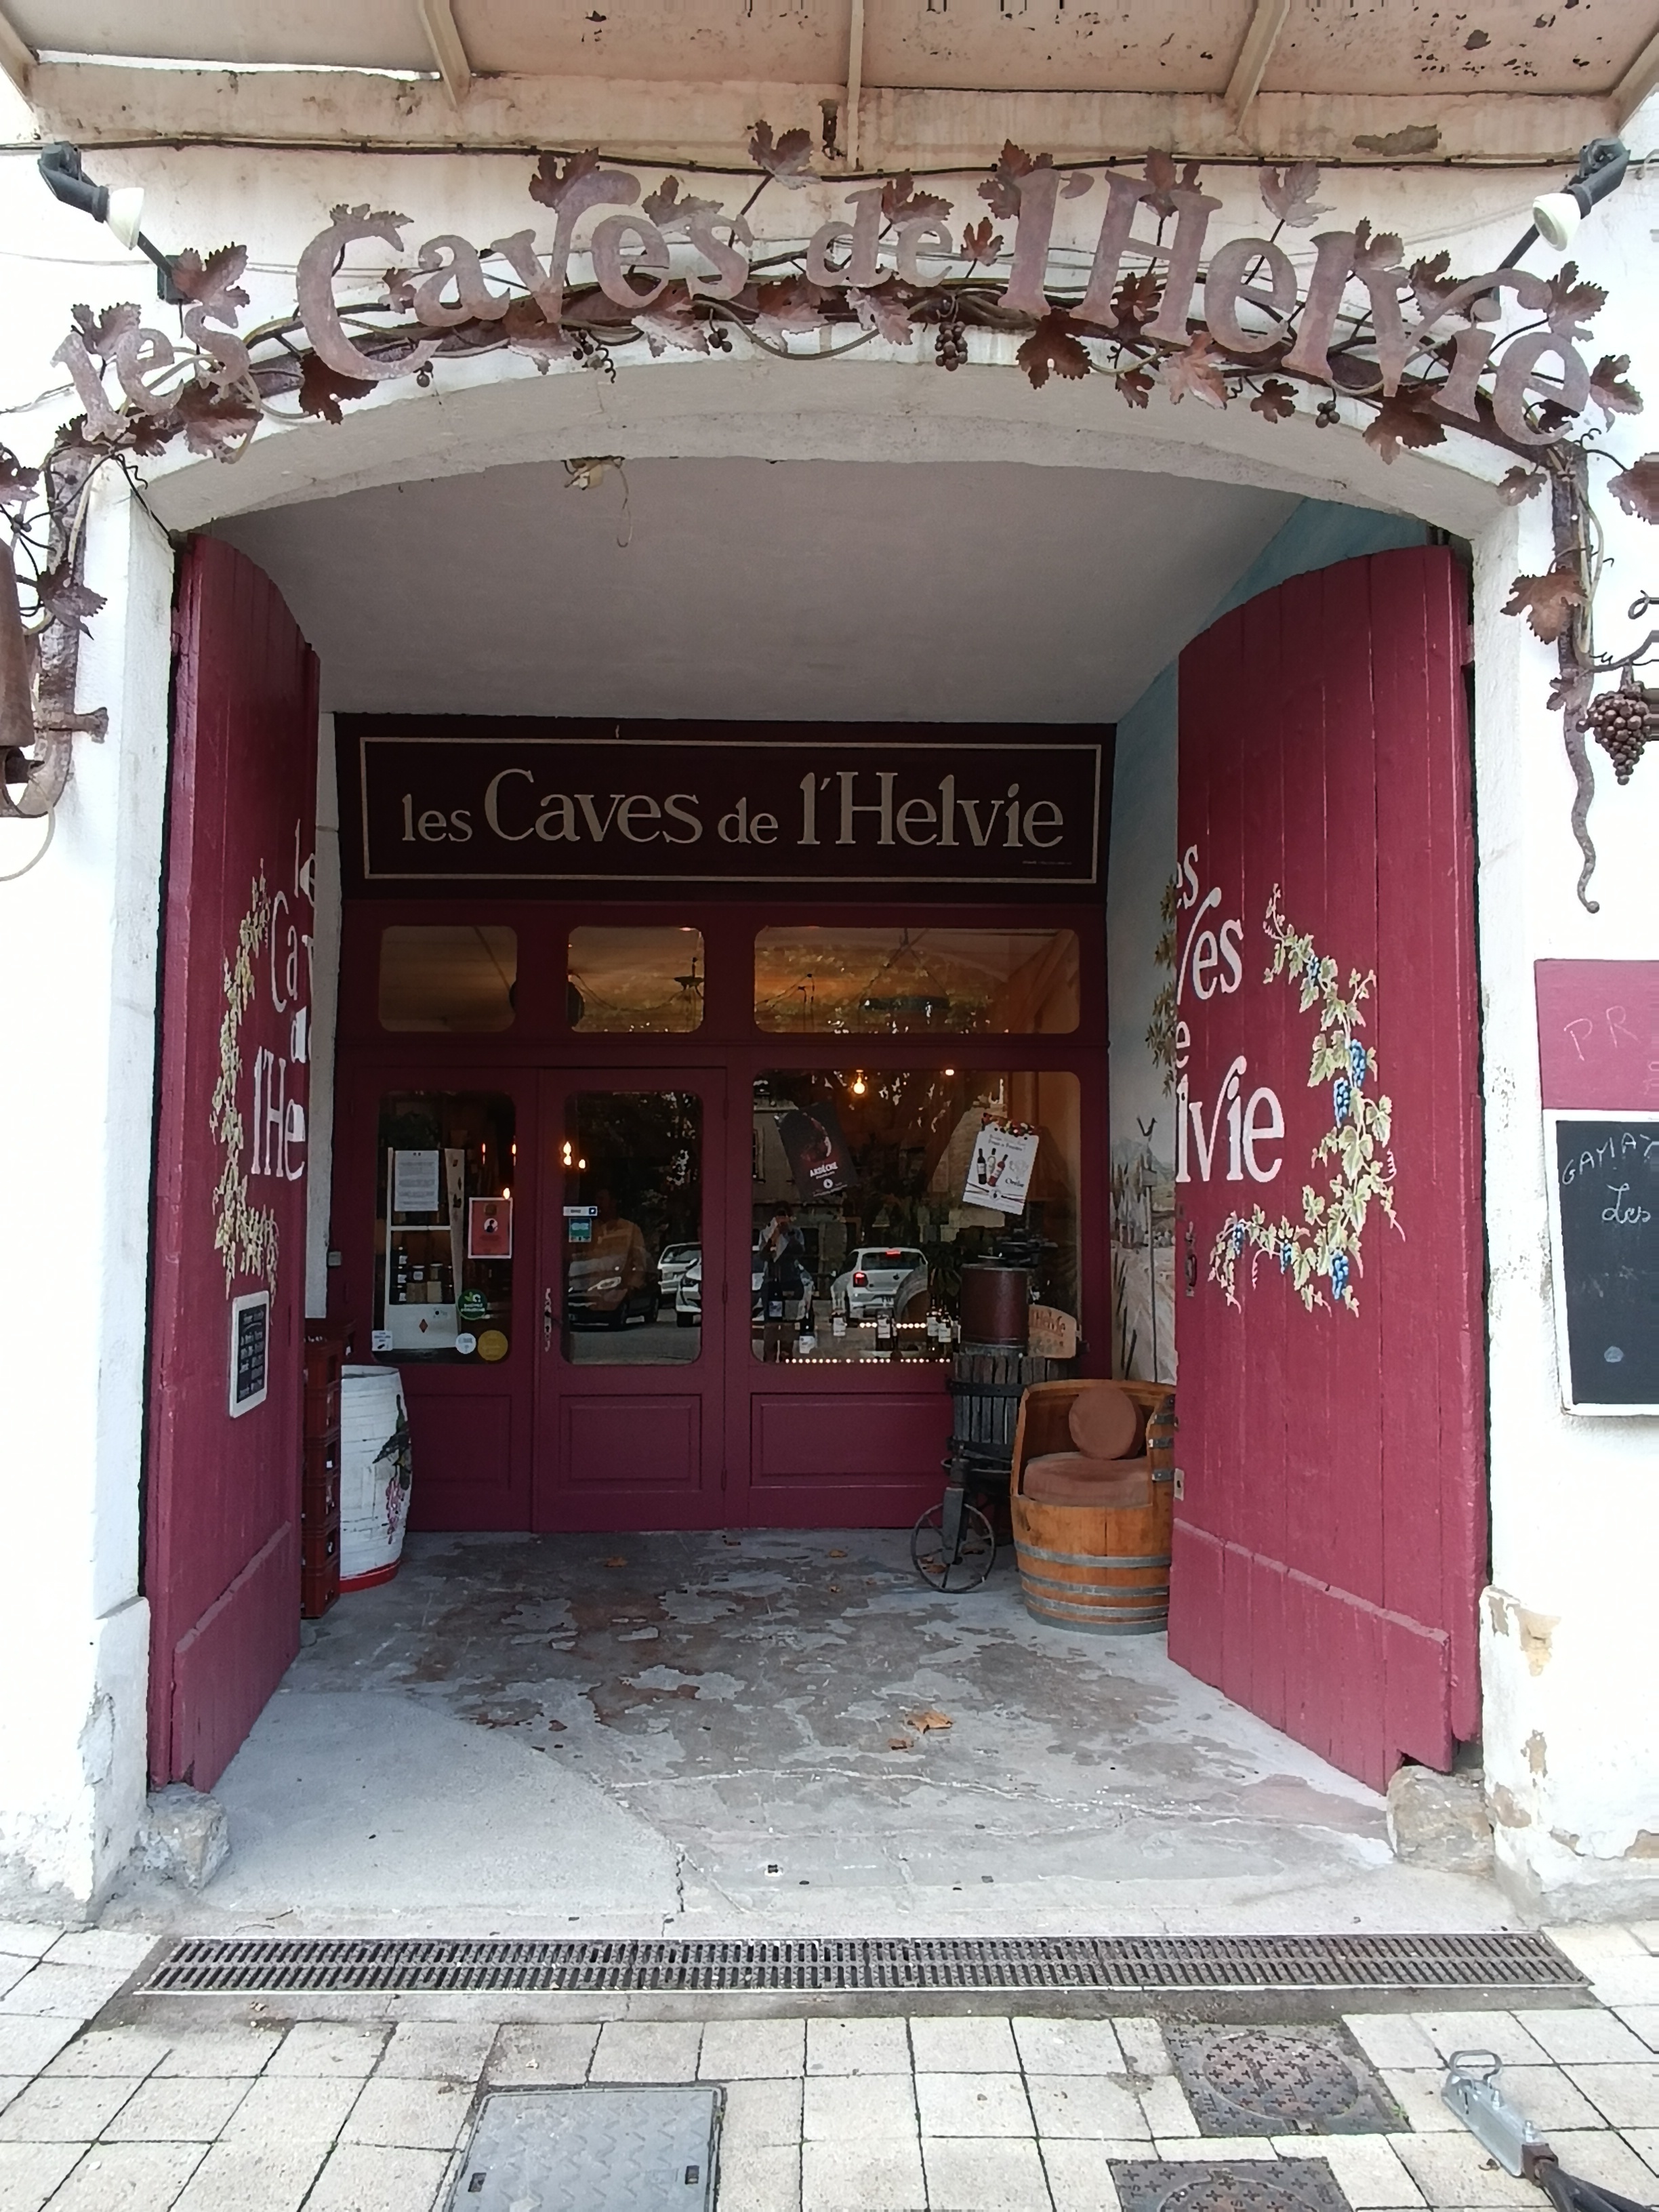 Les Caves de l'Helvie